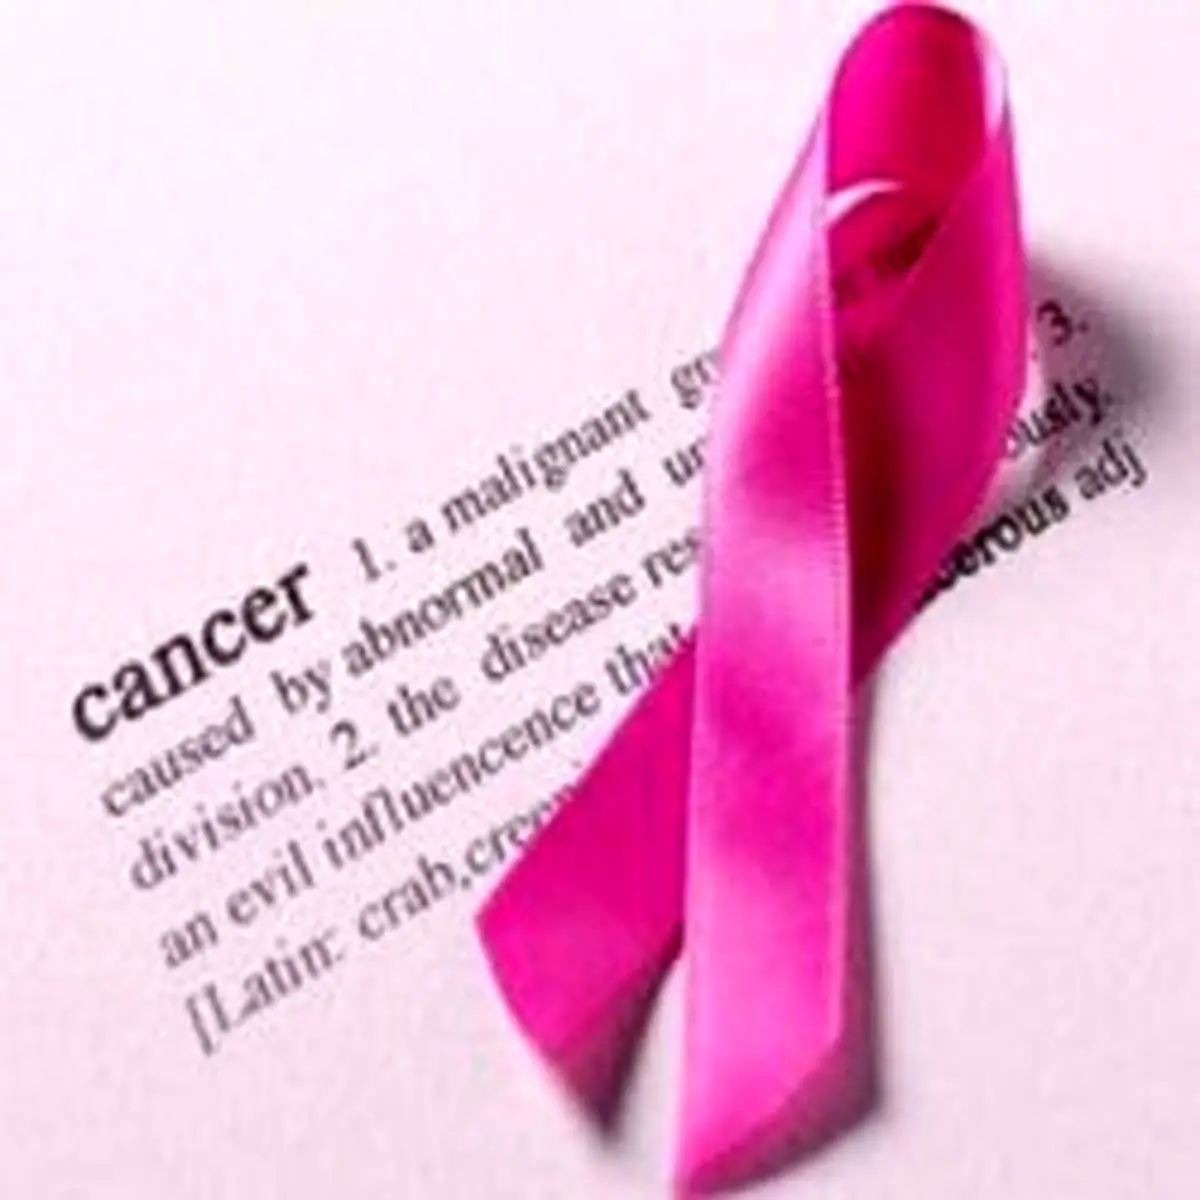 افزایش ۶ درصدی آمار سالانه مبتلایان به سرطان سینه در کشور